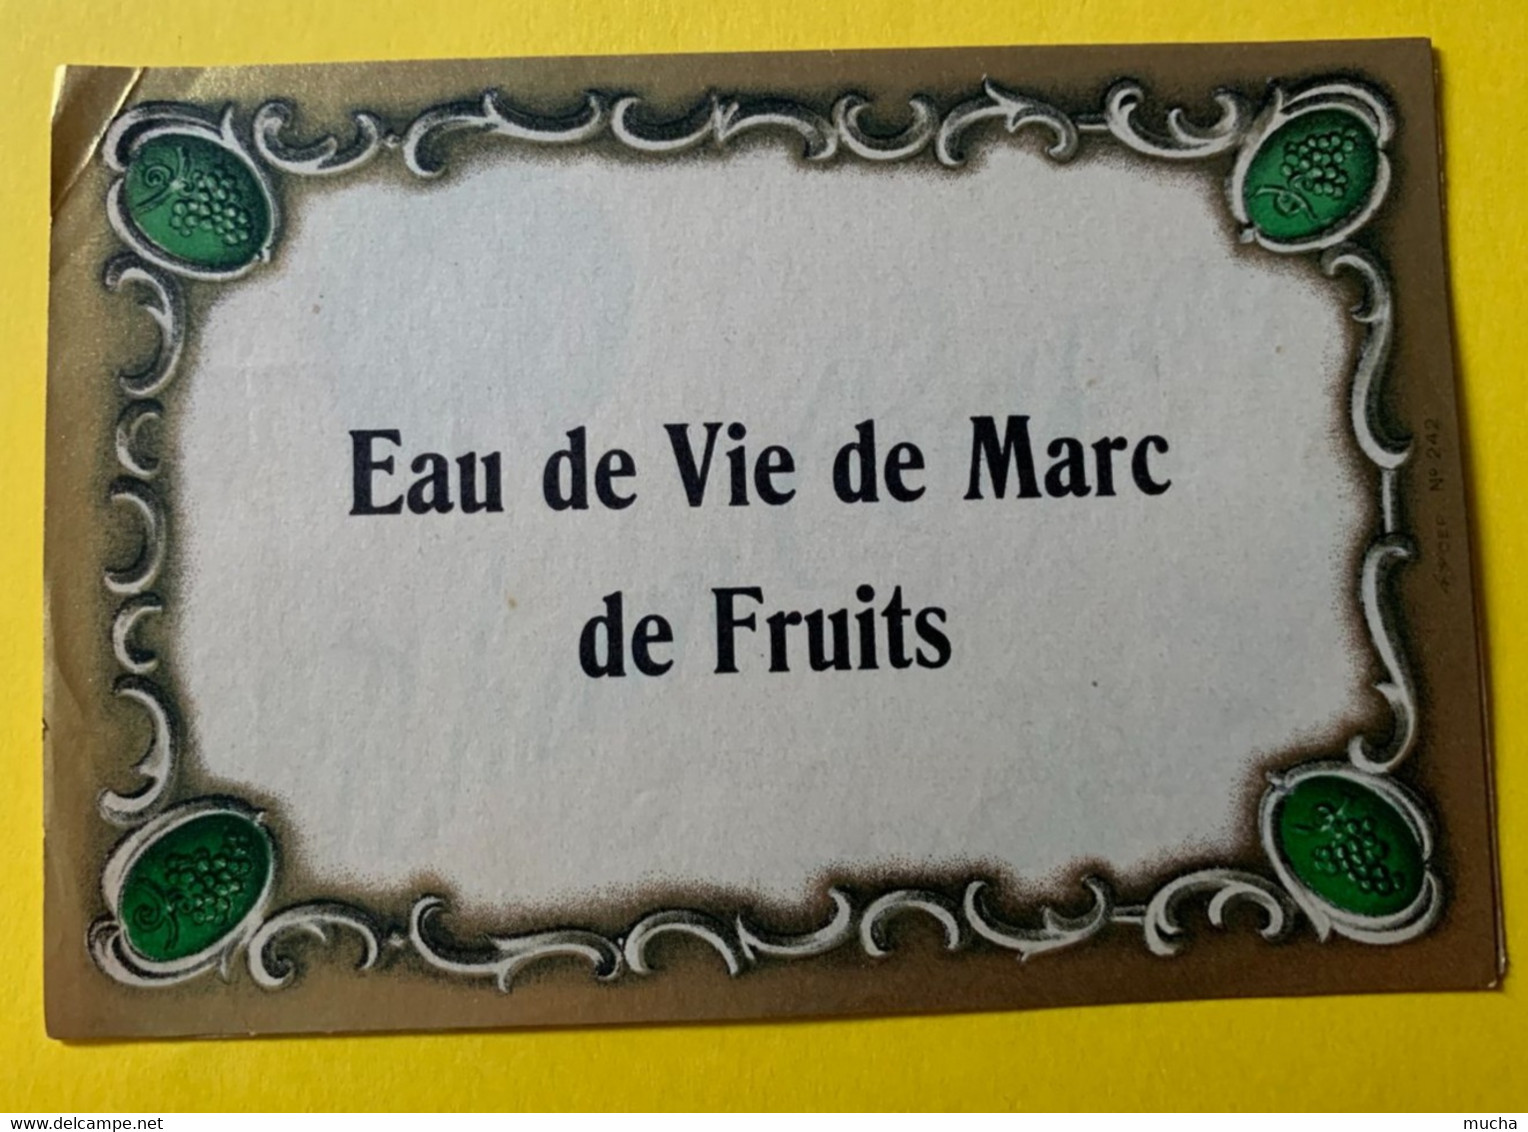 19782 -  Ancienne étiquette Eau De Vie De Marc De Fruits - Alcohols & Spirits